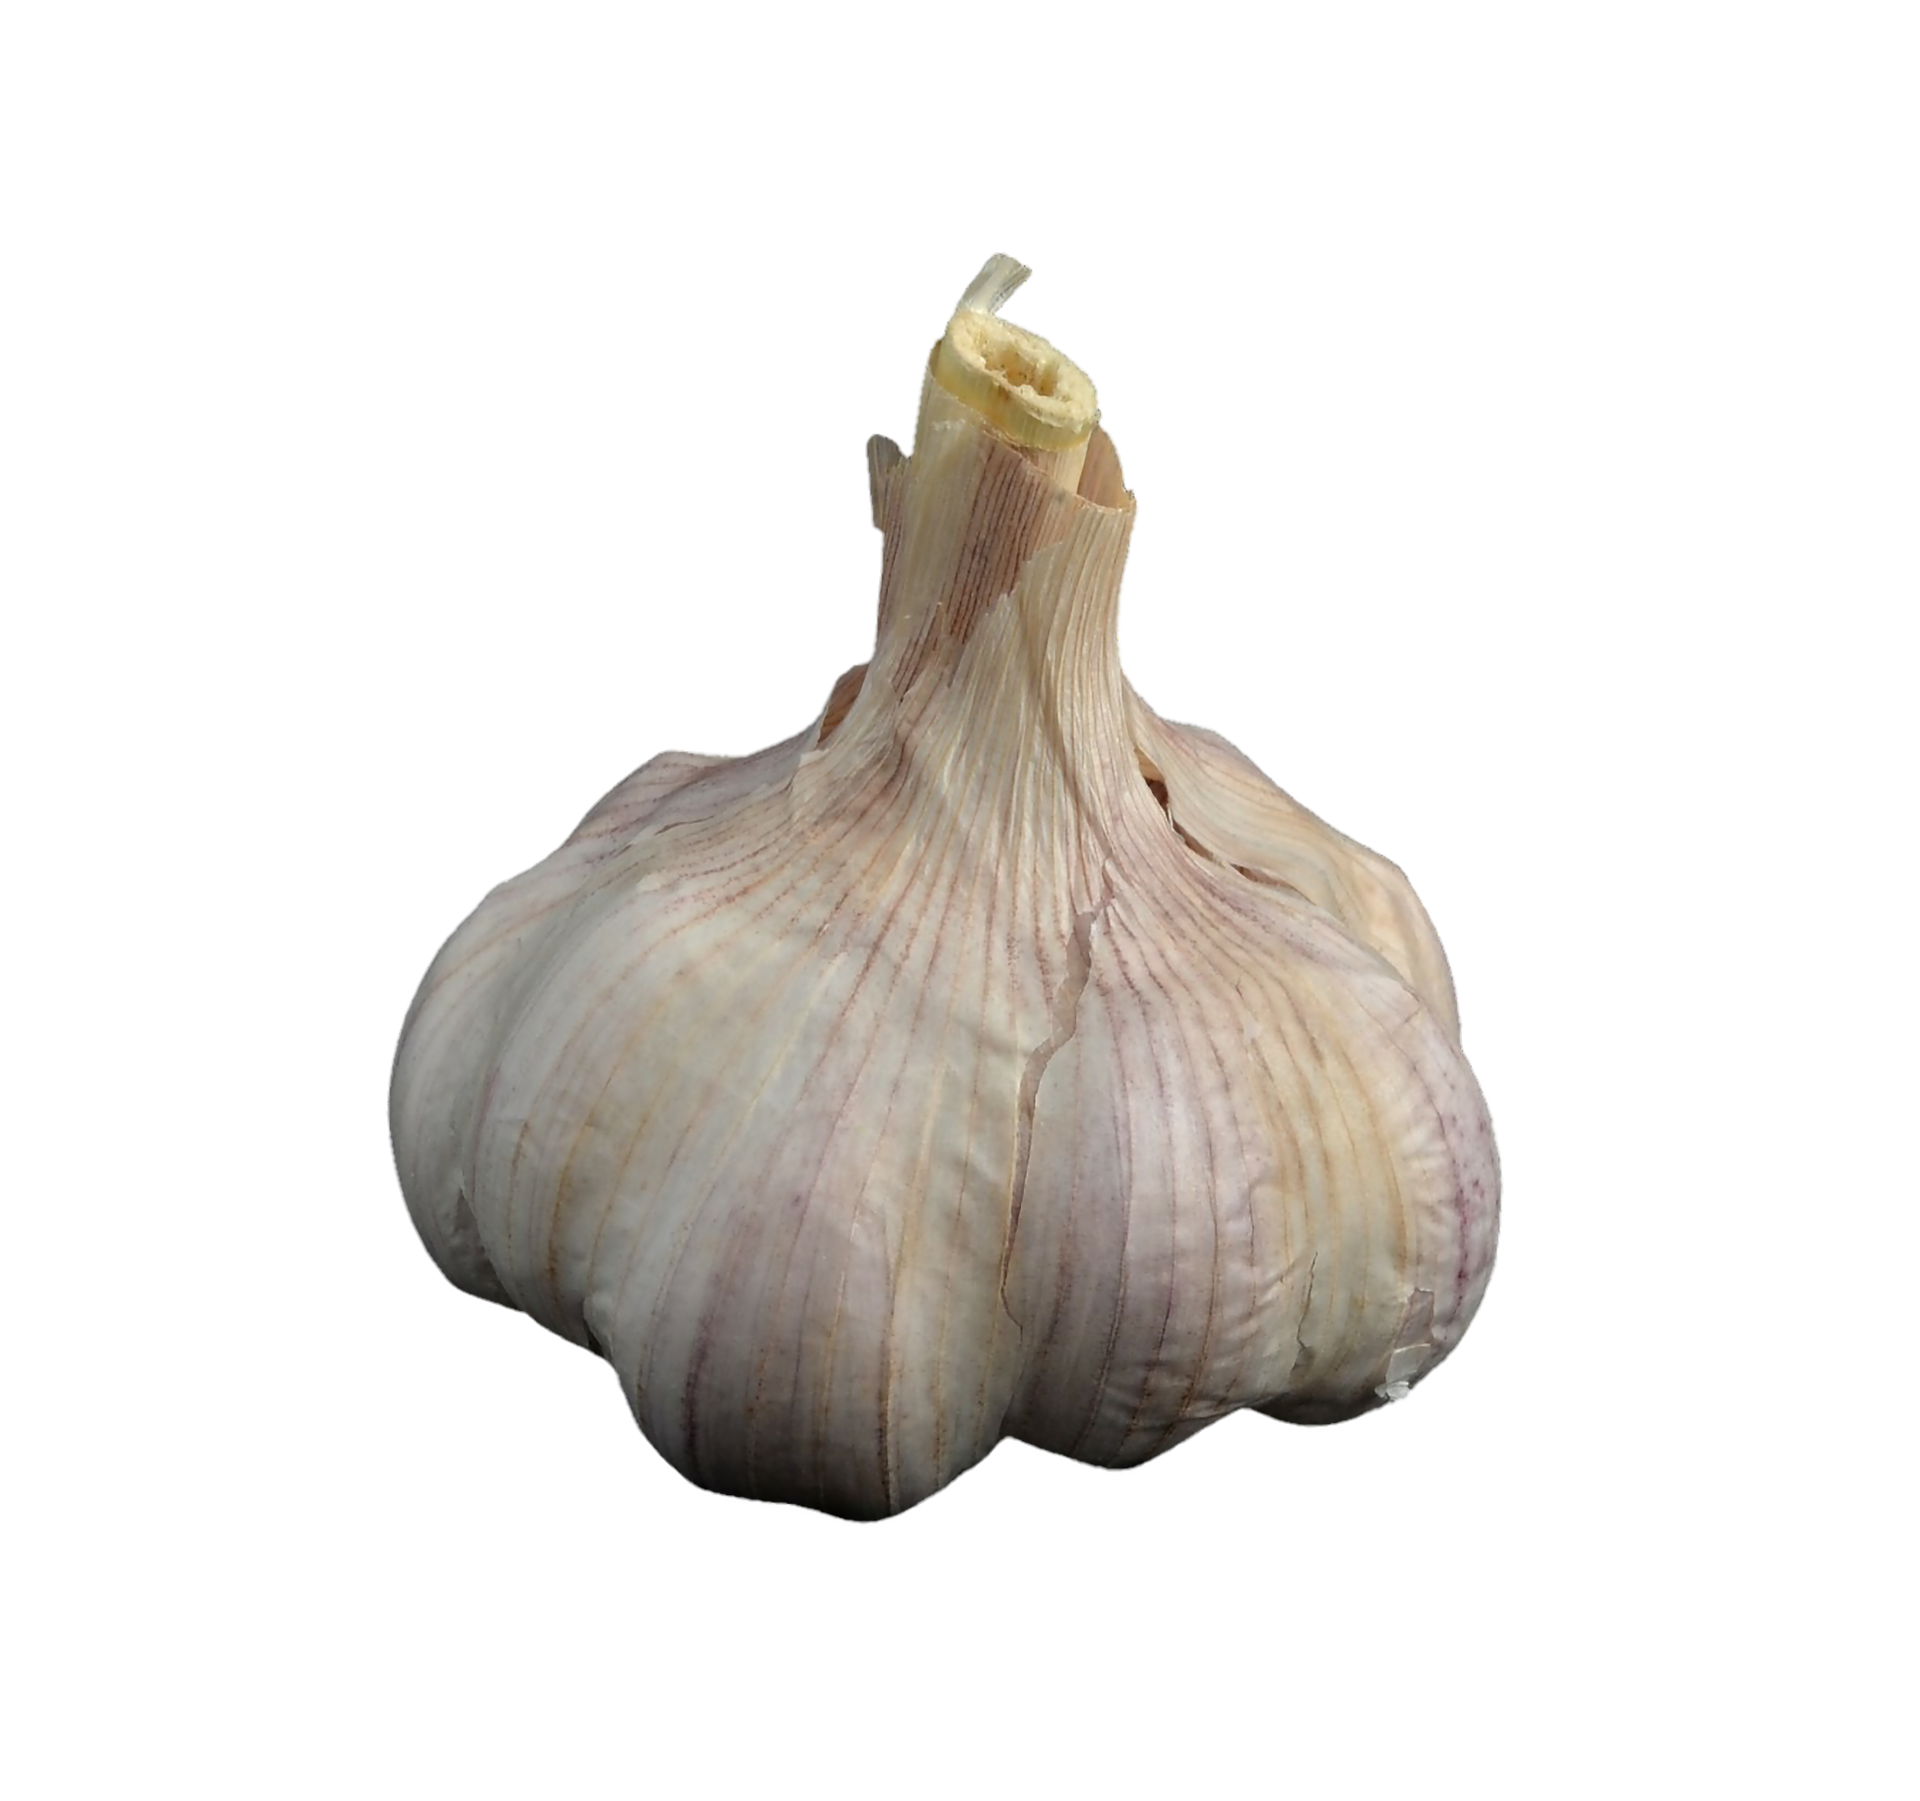 A Garlic Bulb On A Black Background